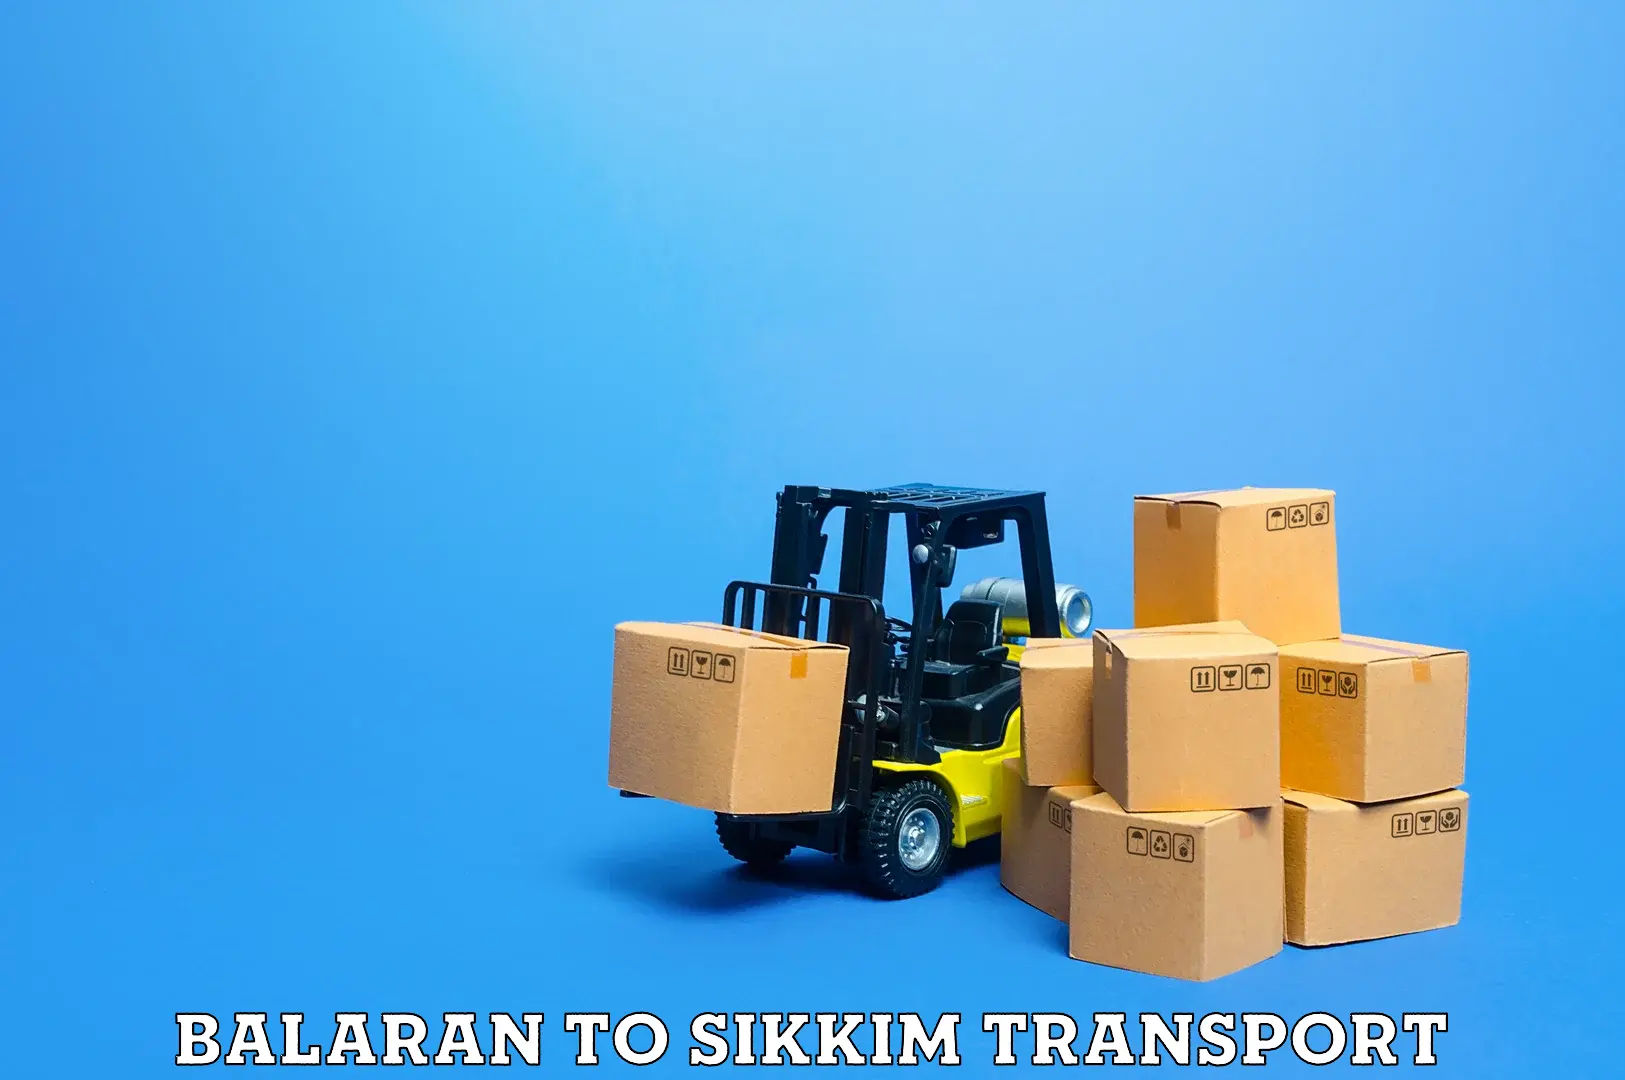 Transport in sharing Balaran to Ranipool